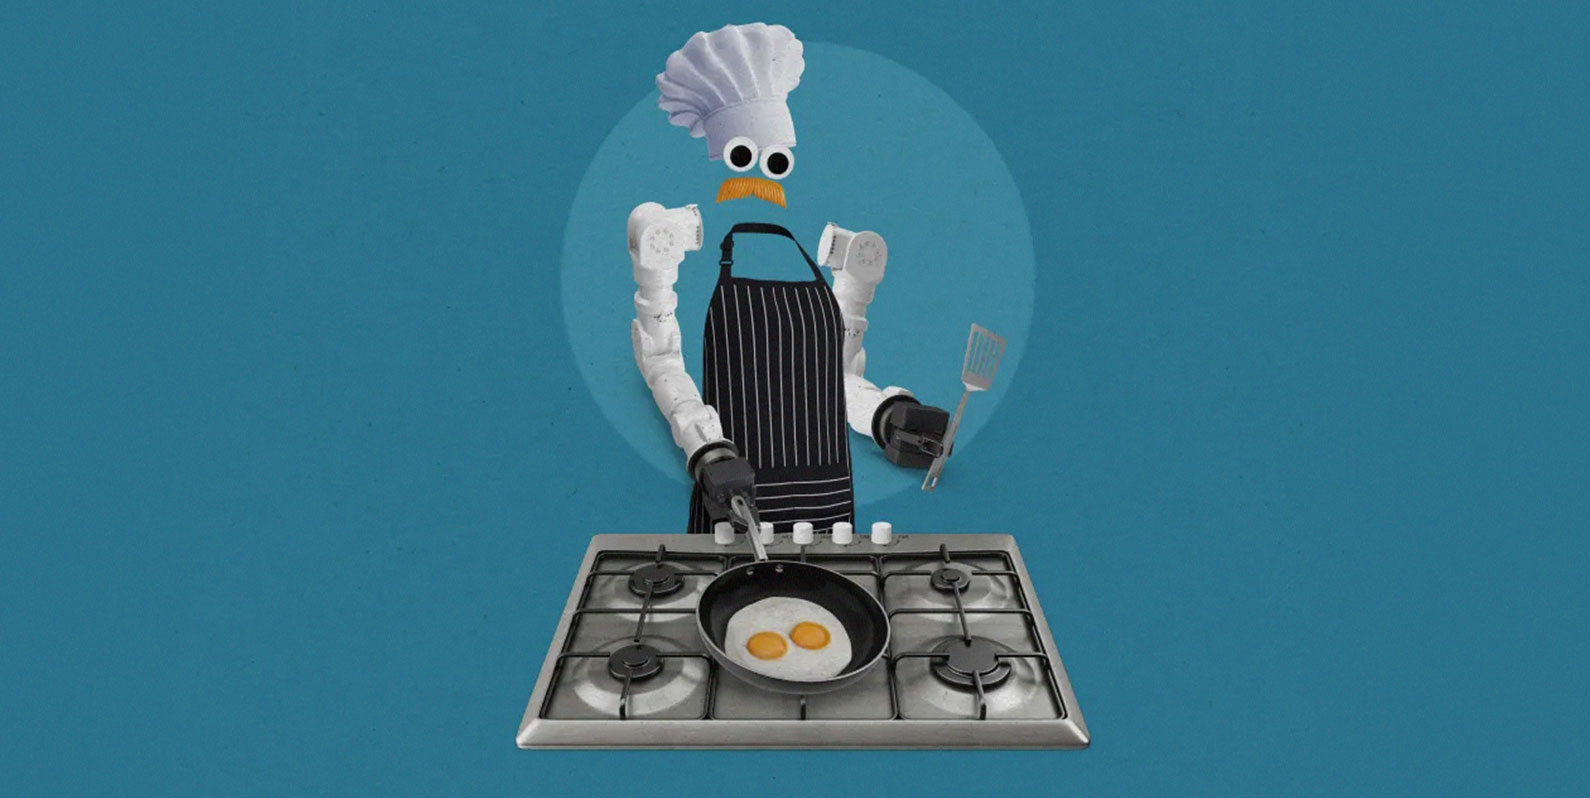 Conheça o robô que cozinha camarão e limpa de forma autônoma